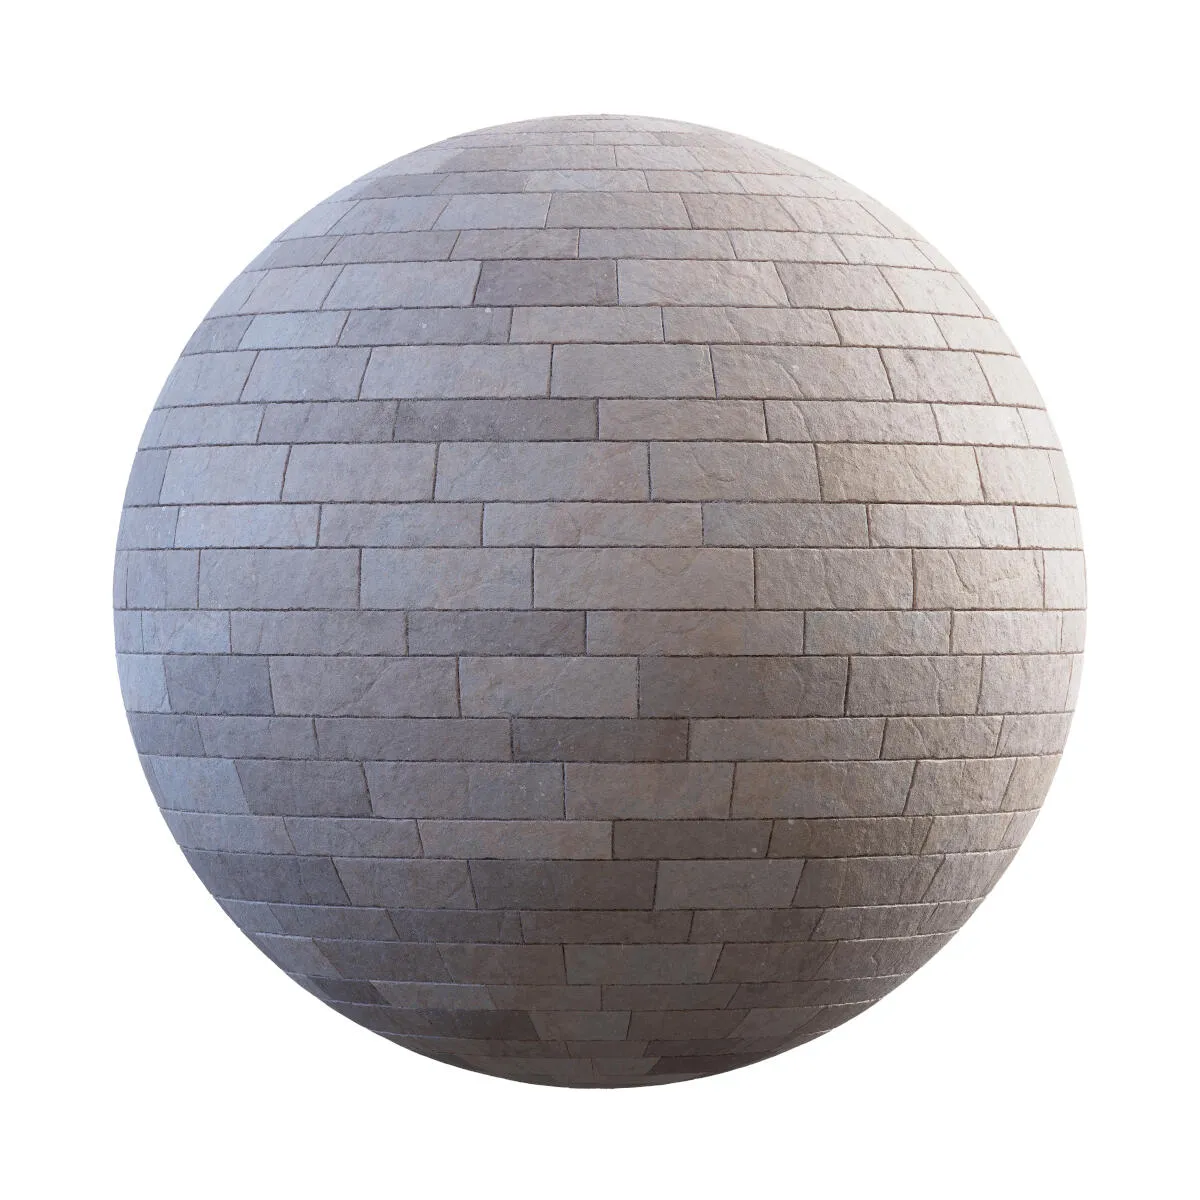 PBR Textures Volume 34 – Pavements – 4K – beige_rectangular_sandstone_pavement_36_78